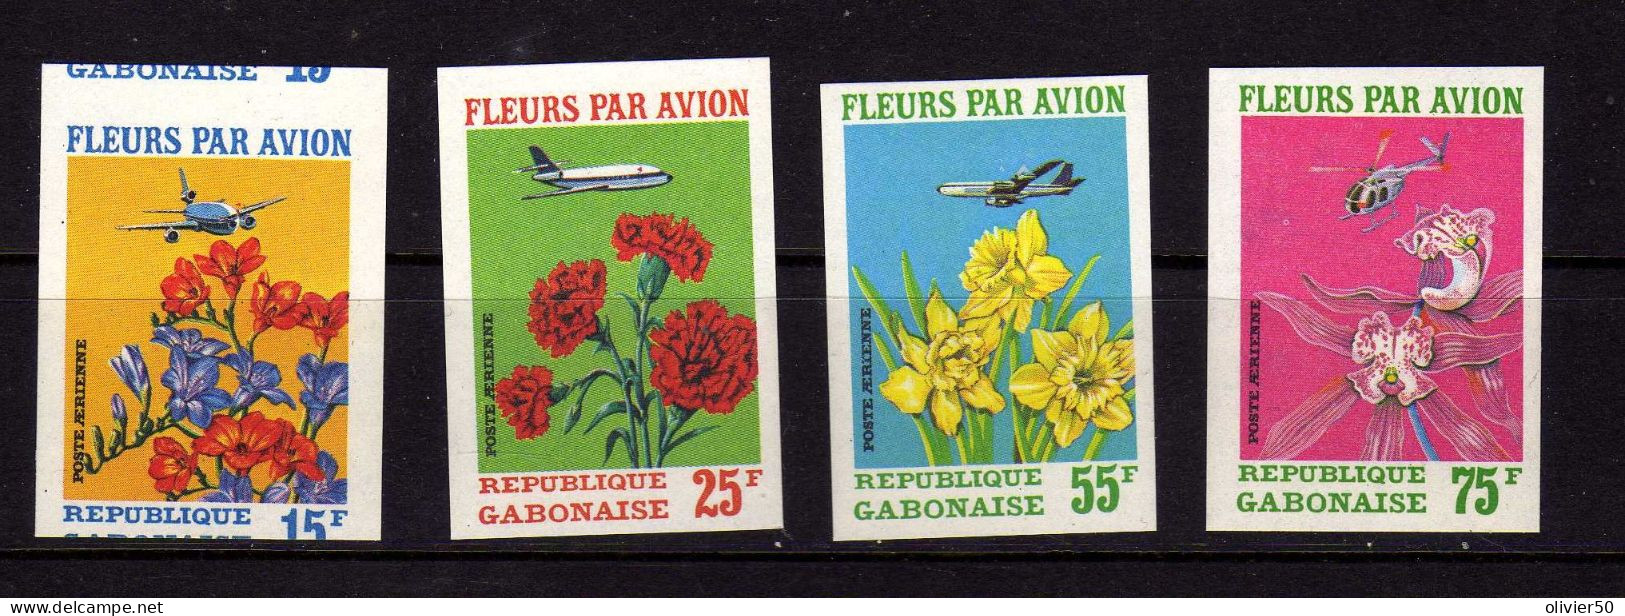 Gabon -P A - Fleurs Par Avion -  Neufs** - MNH  - ND - Gabon (1960-...)